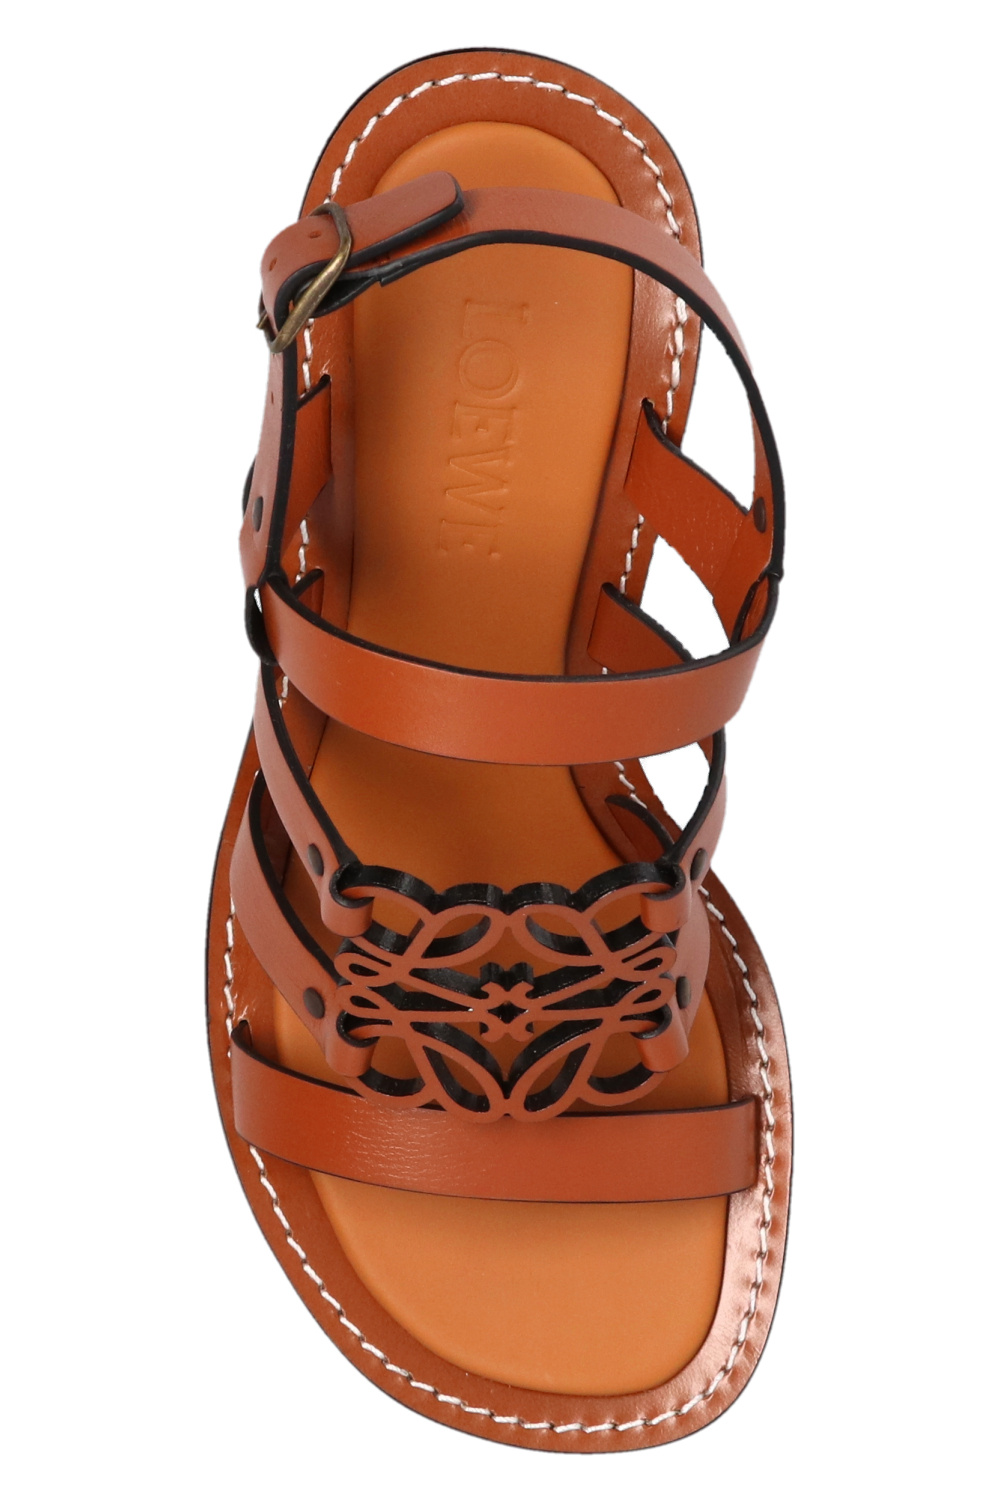 Loewe ‘Anagram’ heeled sandals